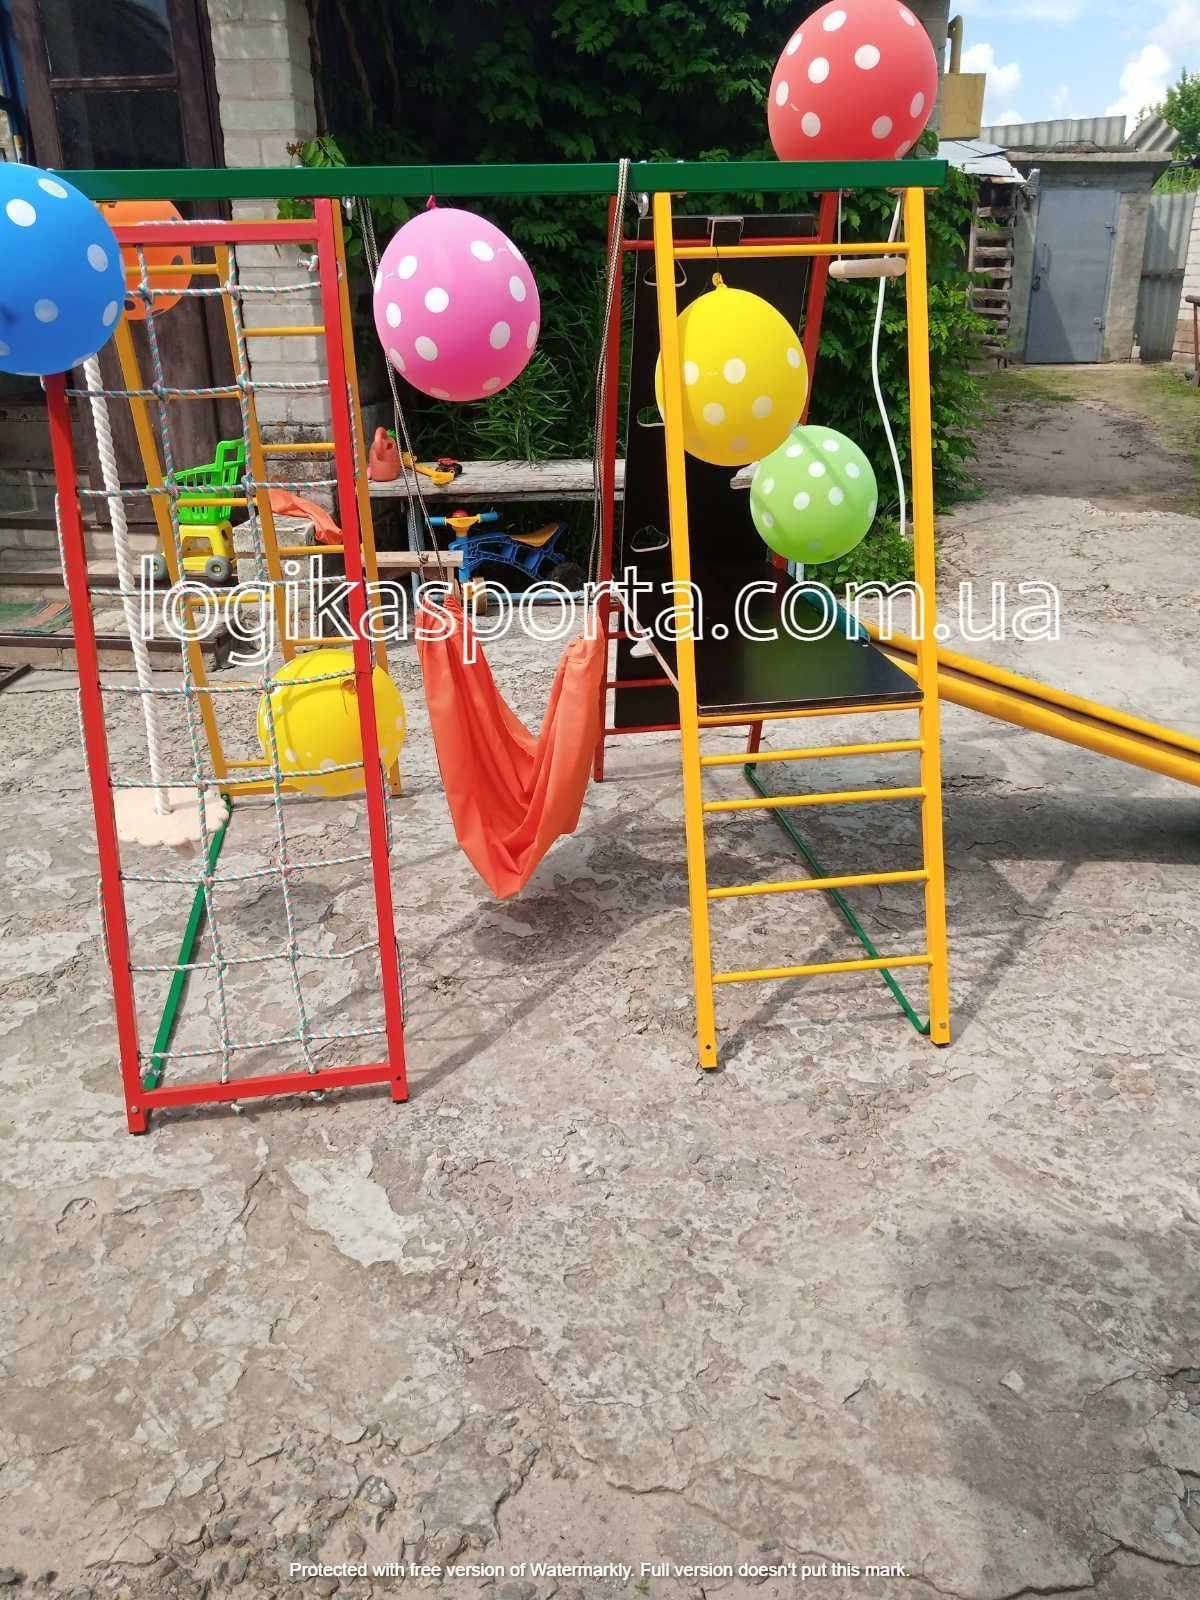 Детский спортивный комплекс для дома и двора, игровая площадка, горка